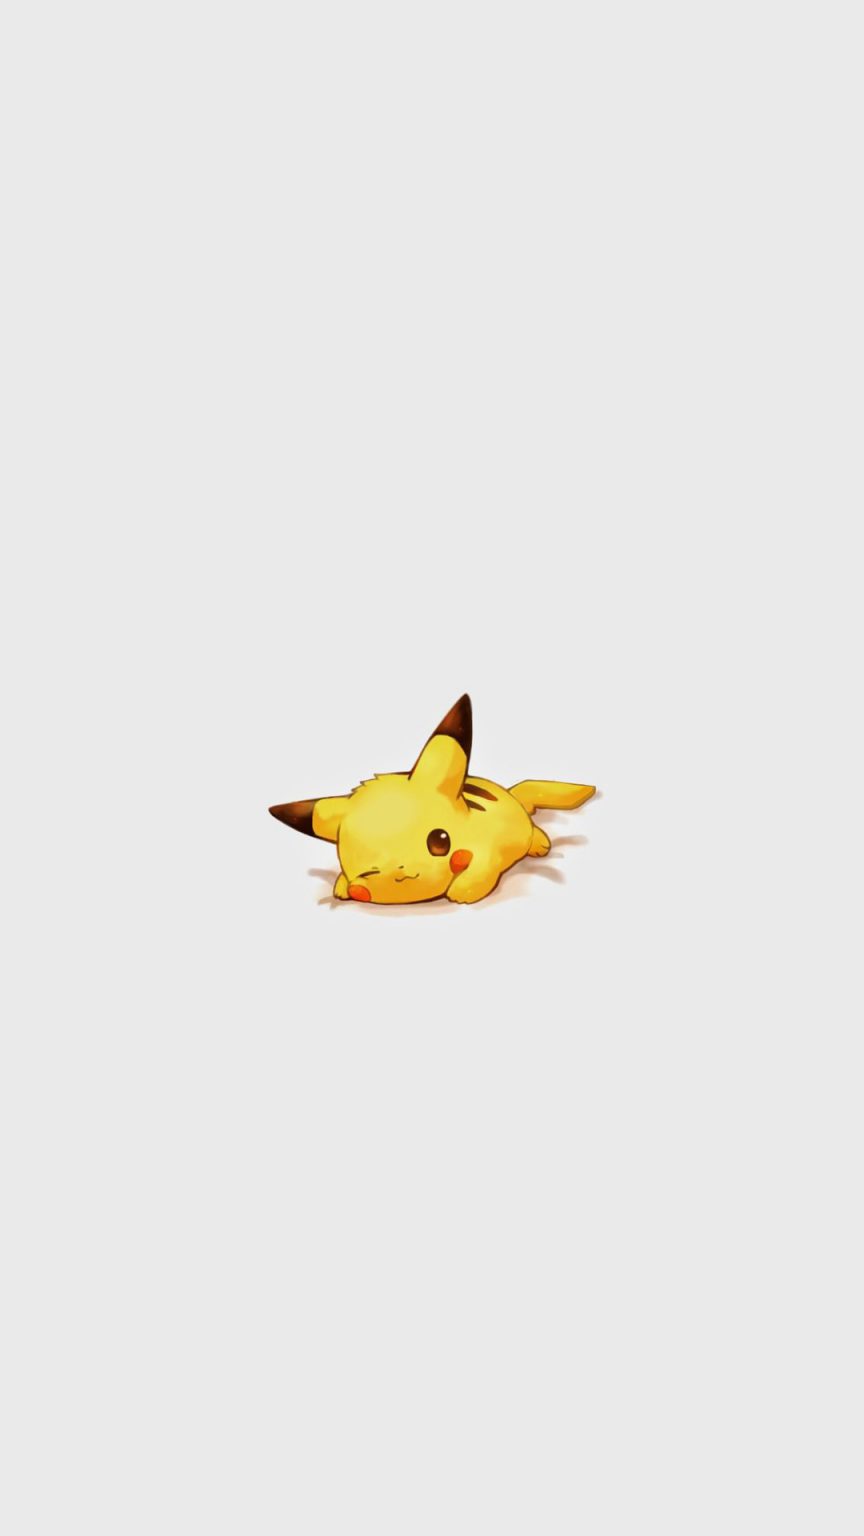 Pikachu Pokemon